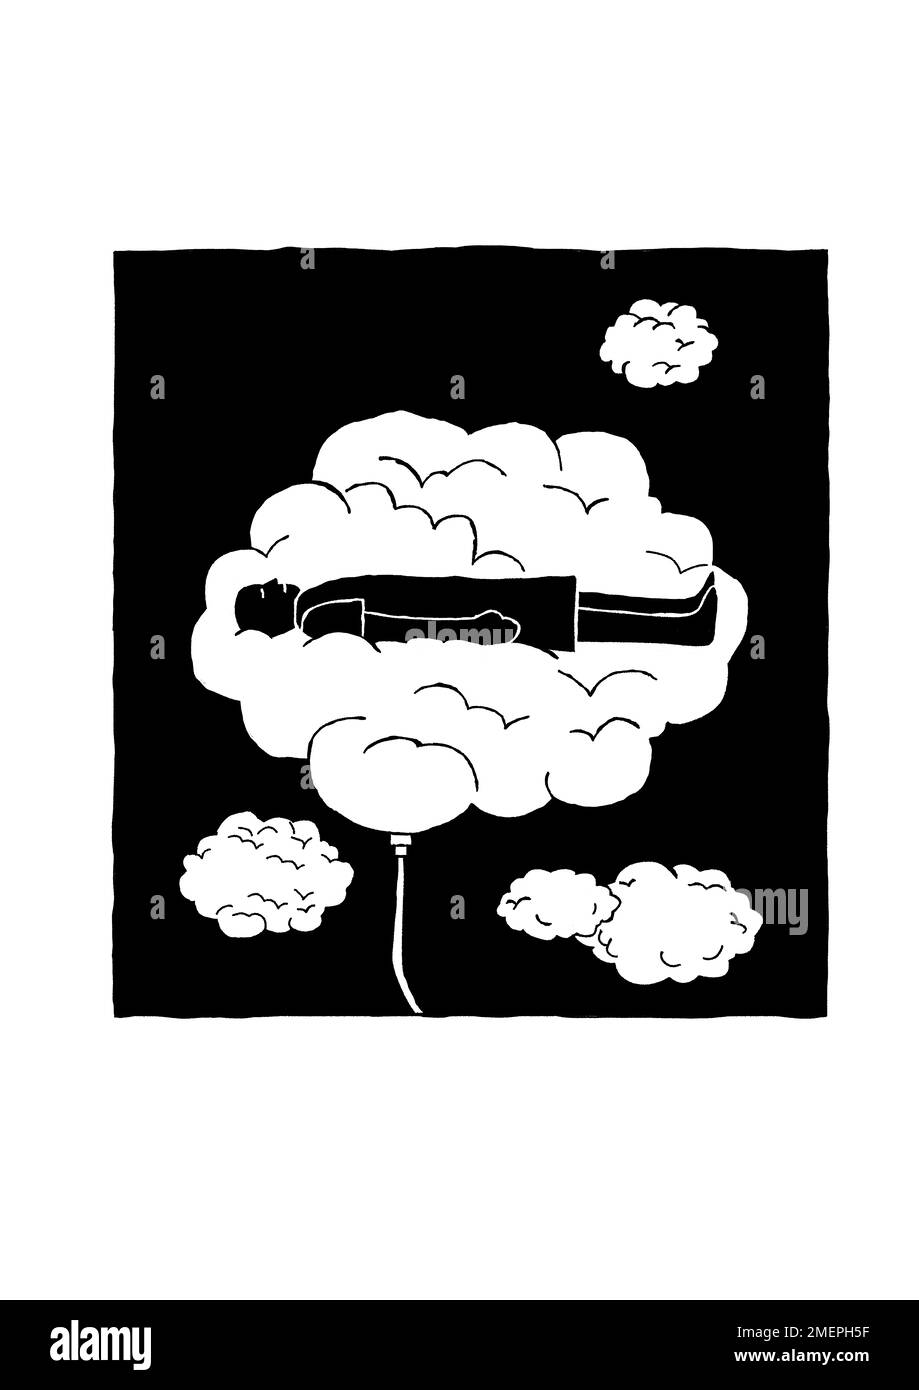 Persona distesa su una grande nuvola collegata a un tubo con nuvole più piccole intorno ad esso Foto Stock